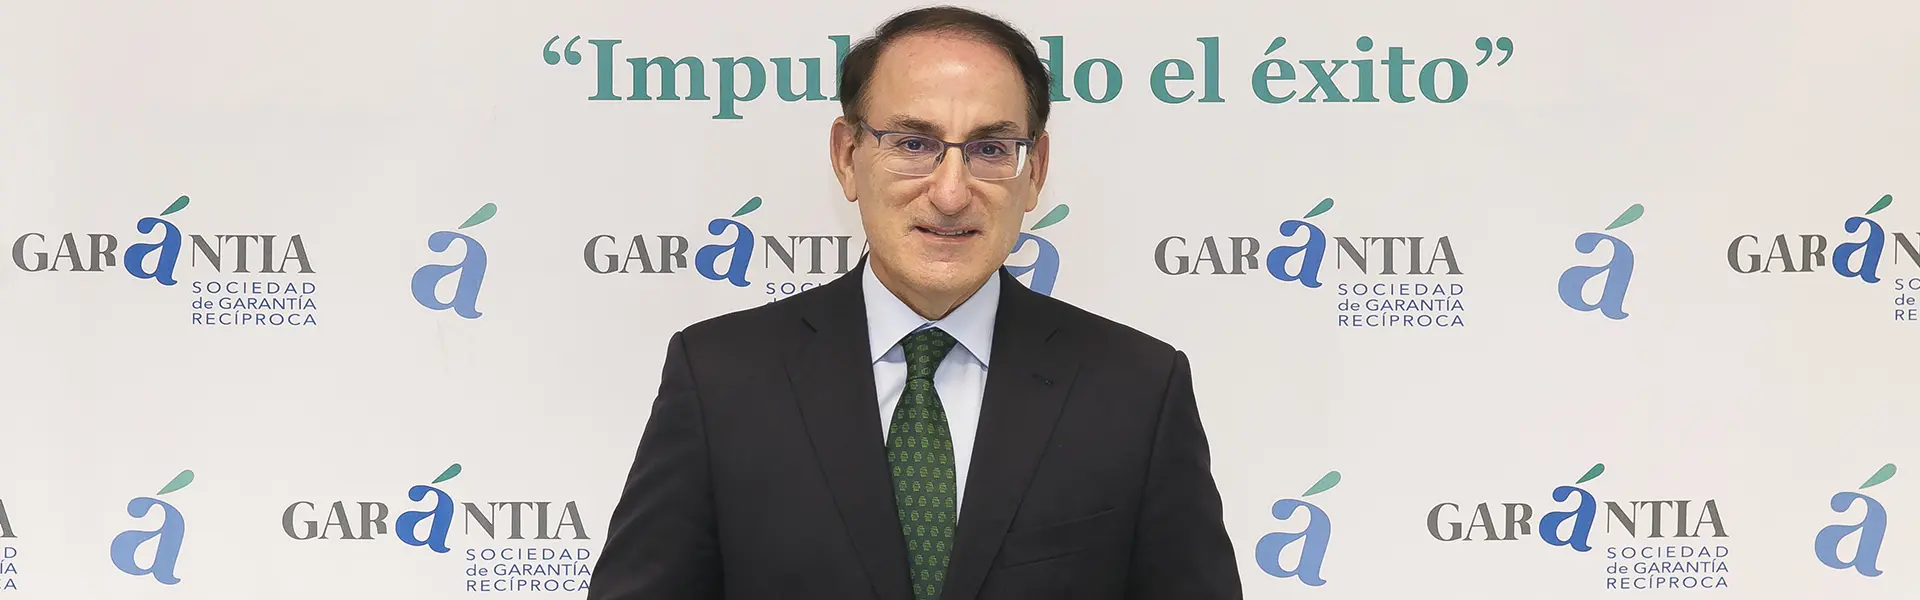 González de Lara, elegido por aclamación como presidente de la patronal andaluza ultimas noticias